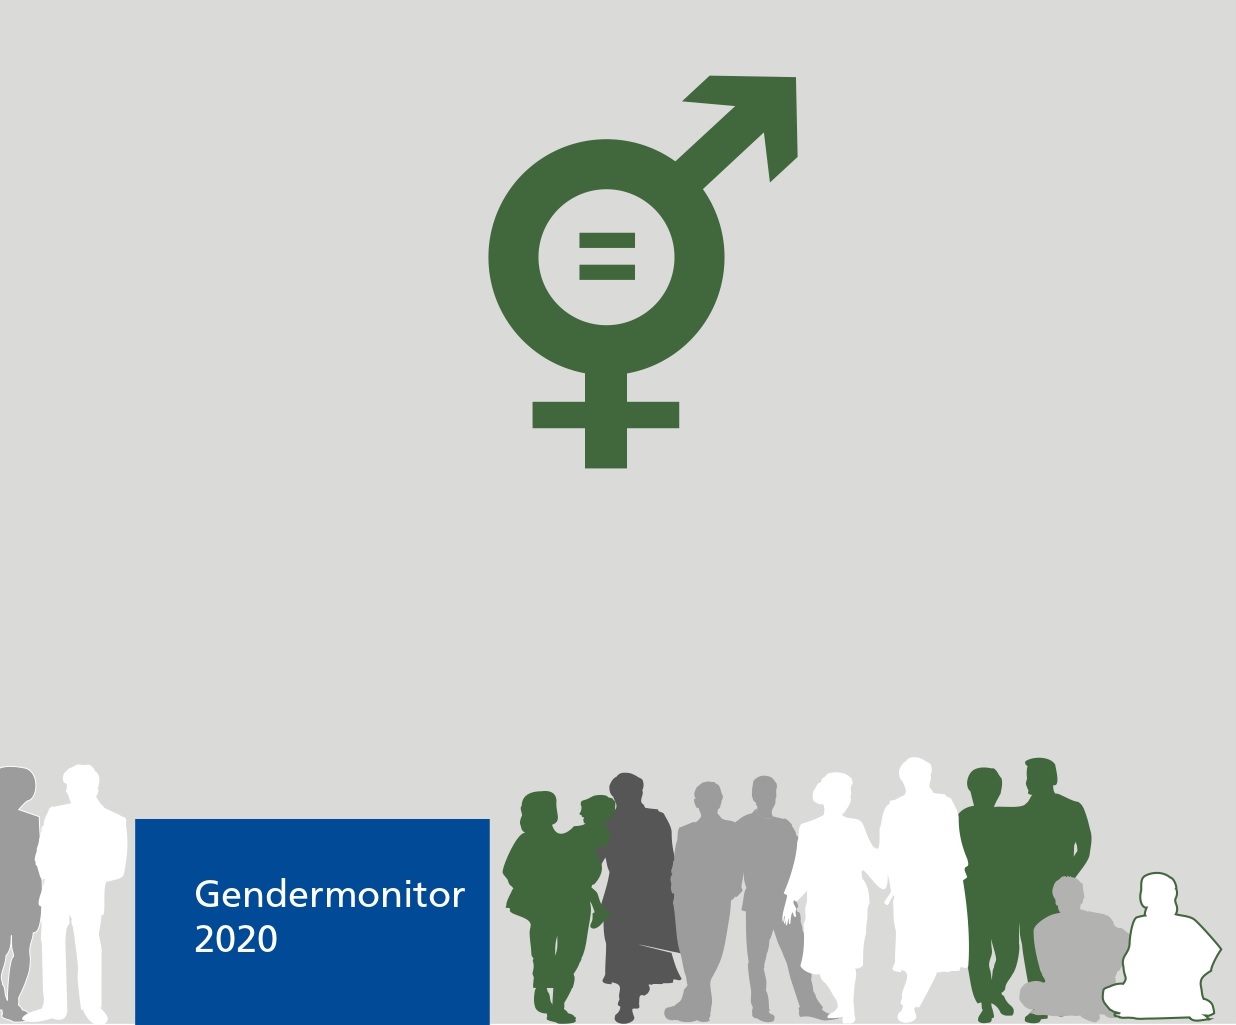 Abbildung: Gendermonitor 2020 der FernUniversität